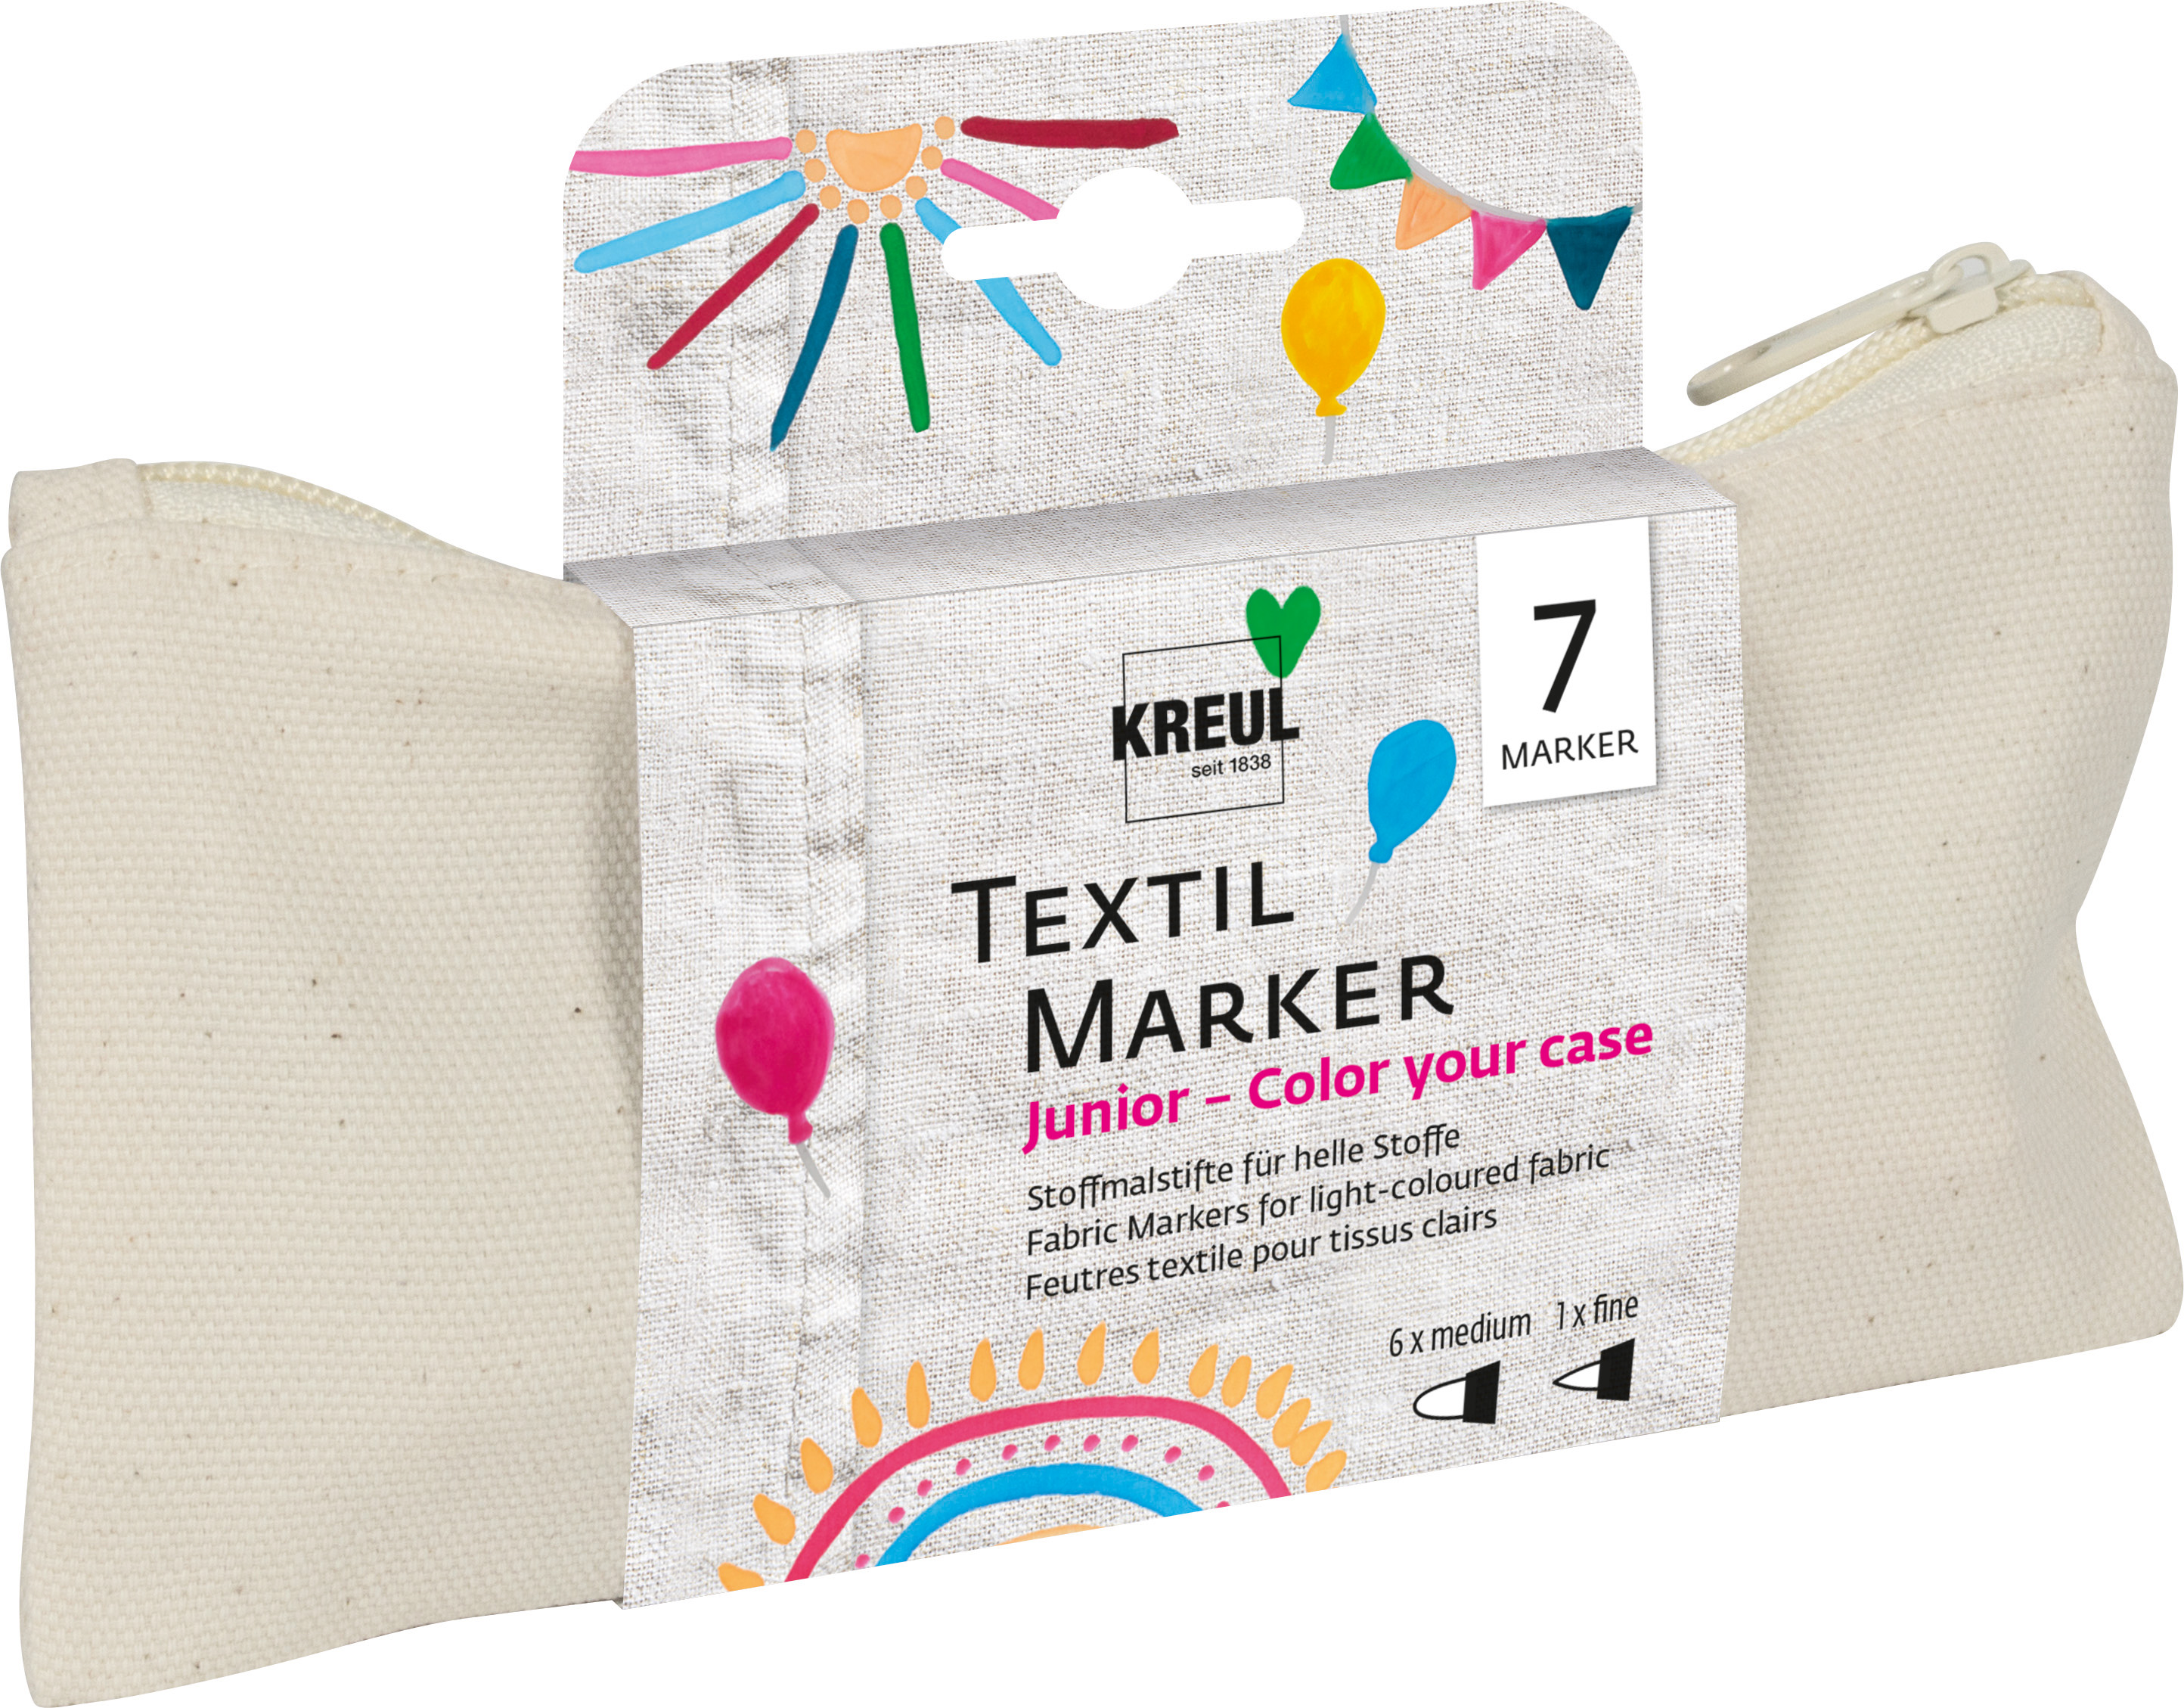 KREUL Textil Marker Junior Set Color your case Nettopreis